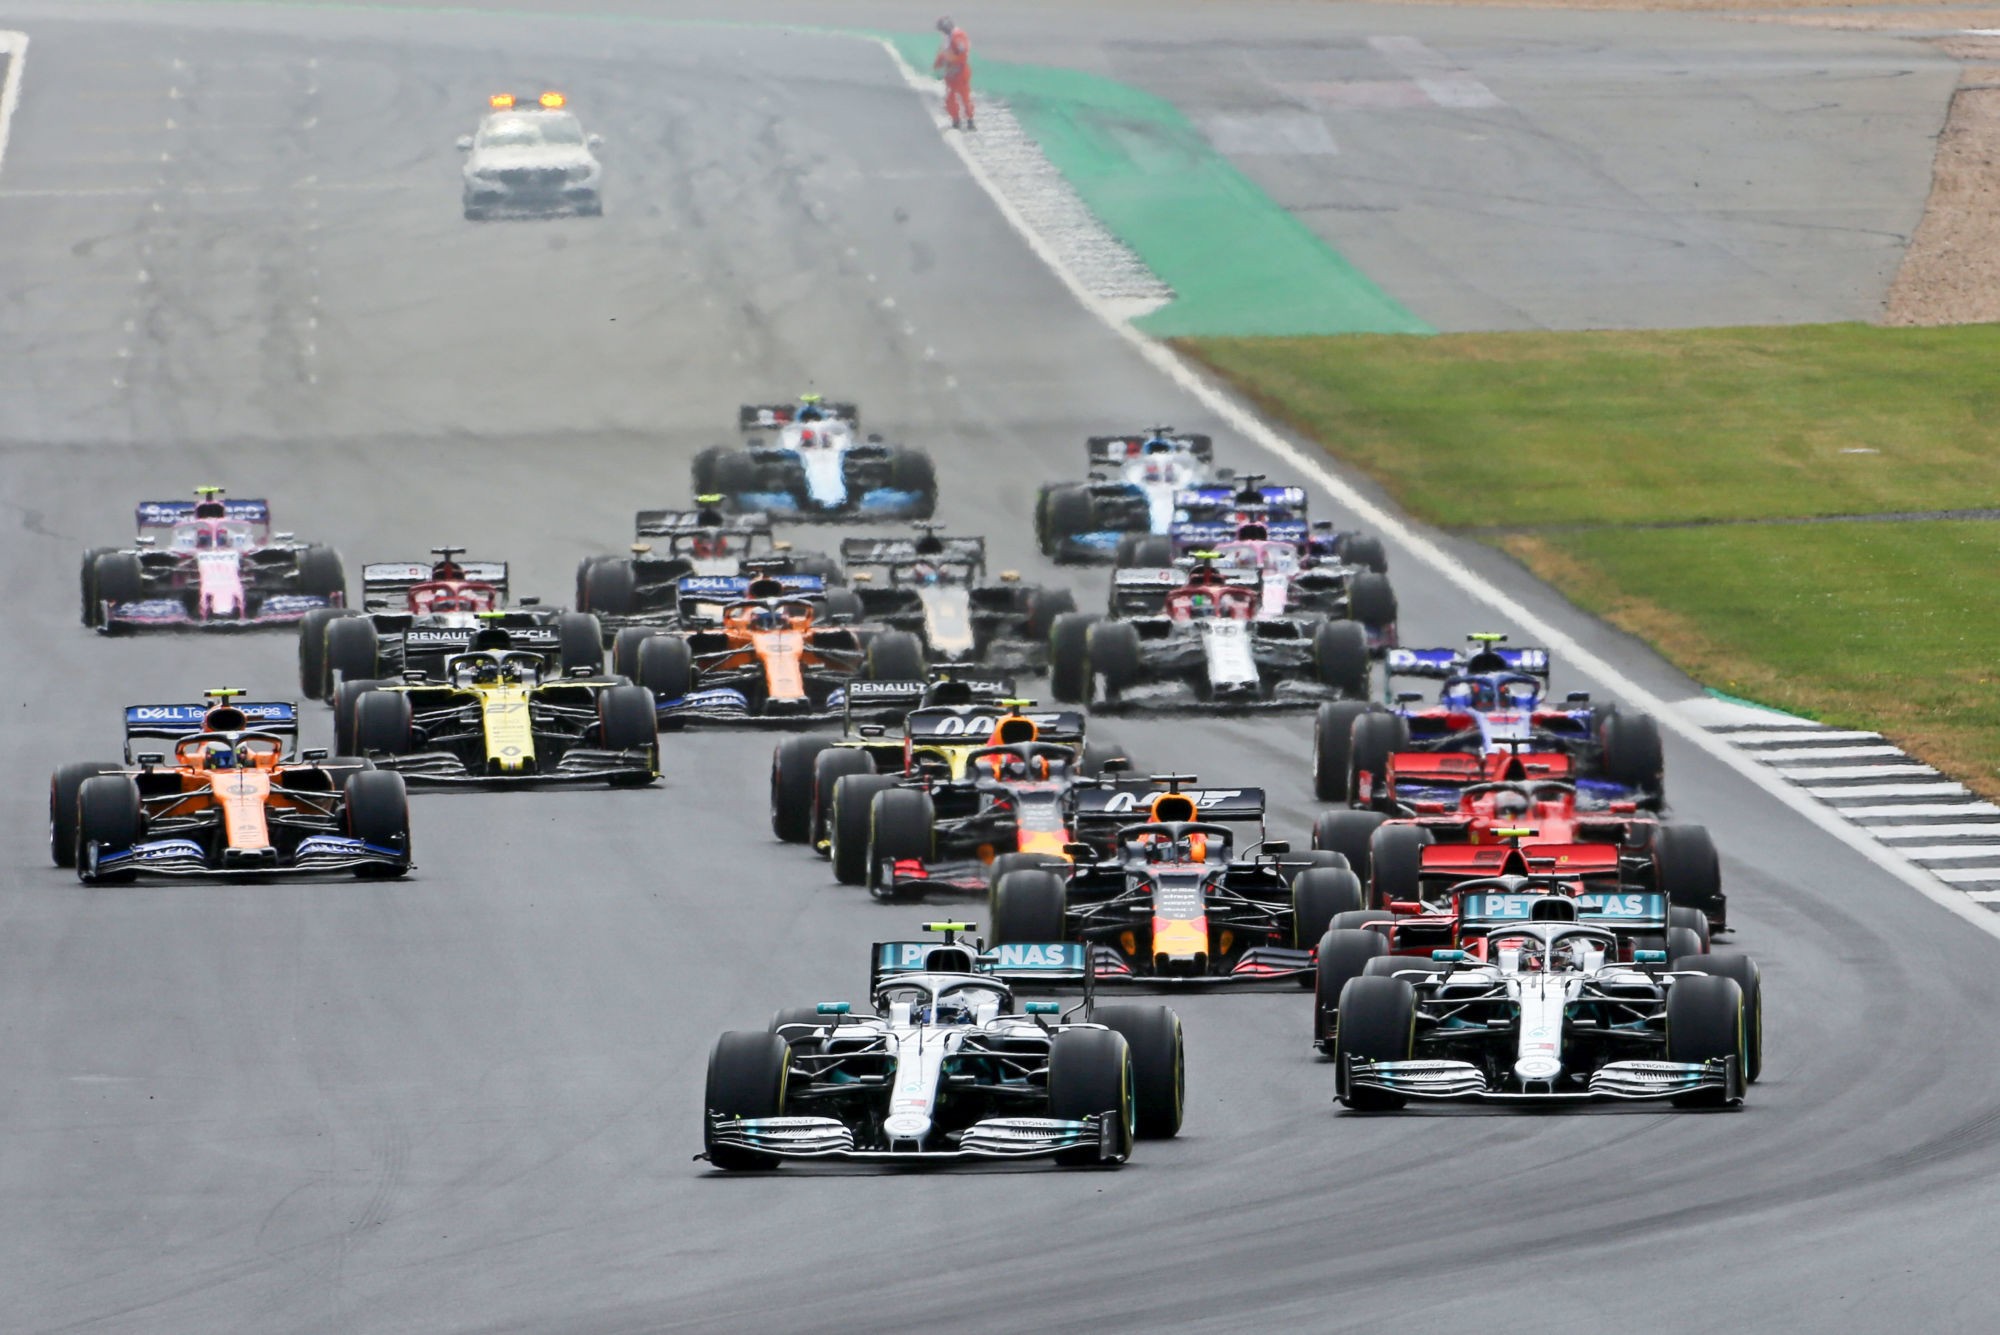 Grand-Prix de Grande-Bretagne, circuit de Silverstone
Photo : Icon Sport